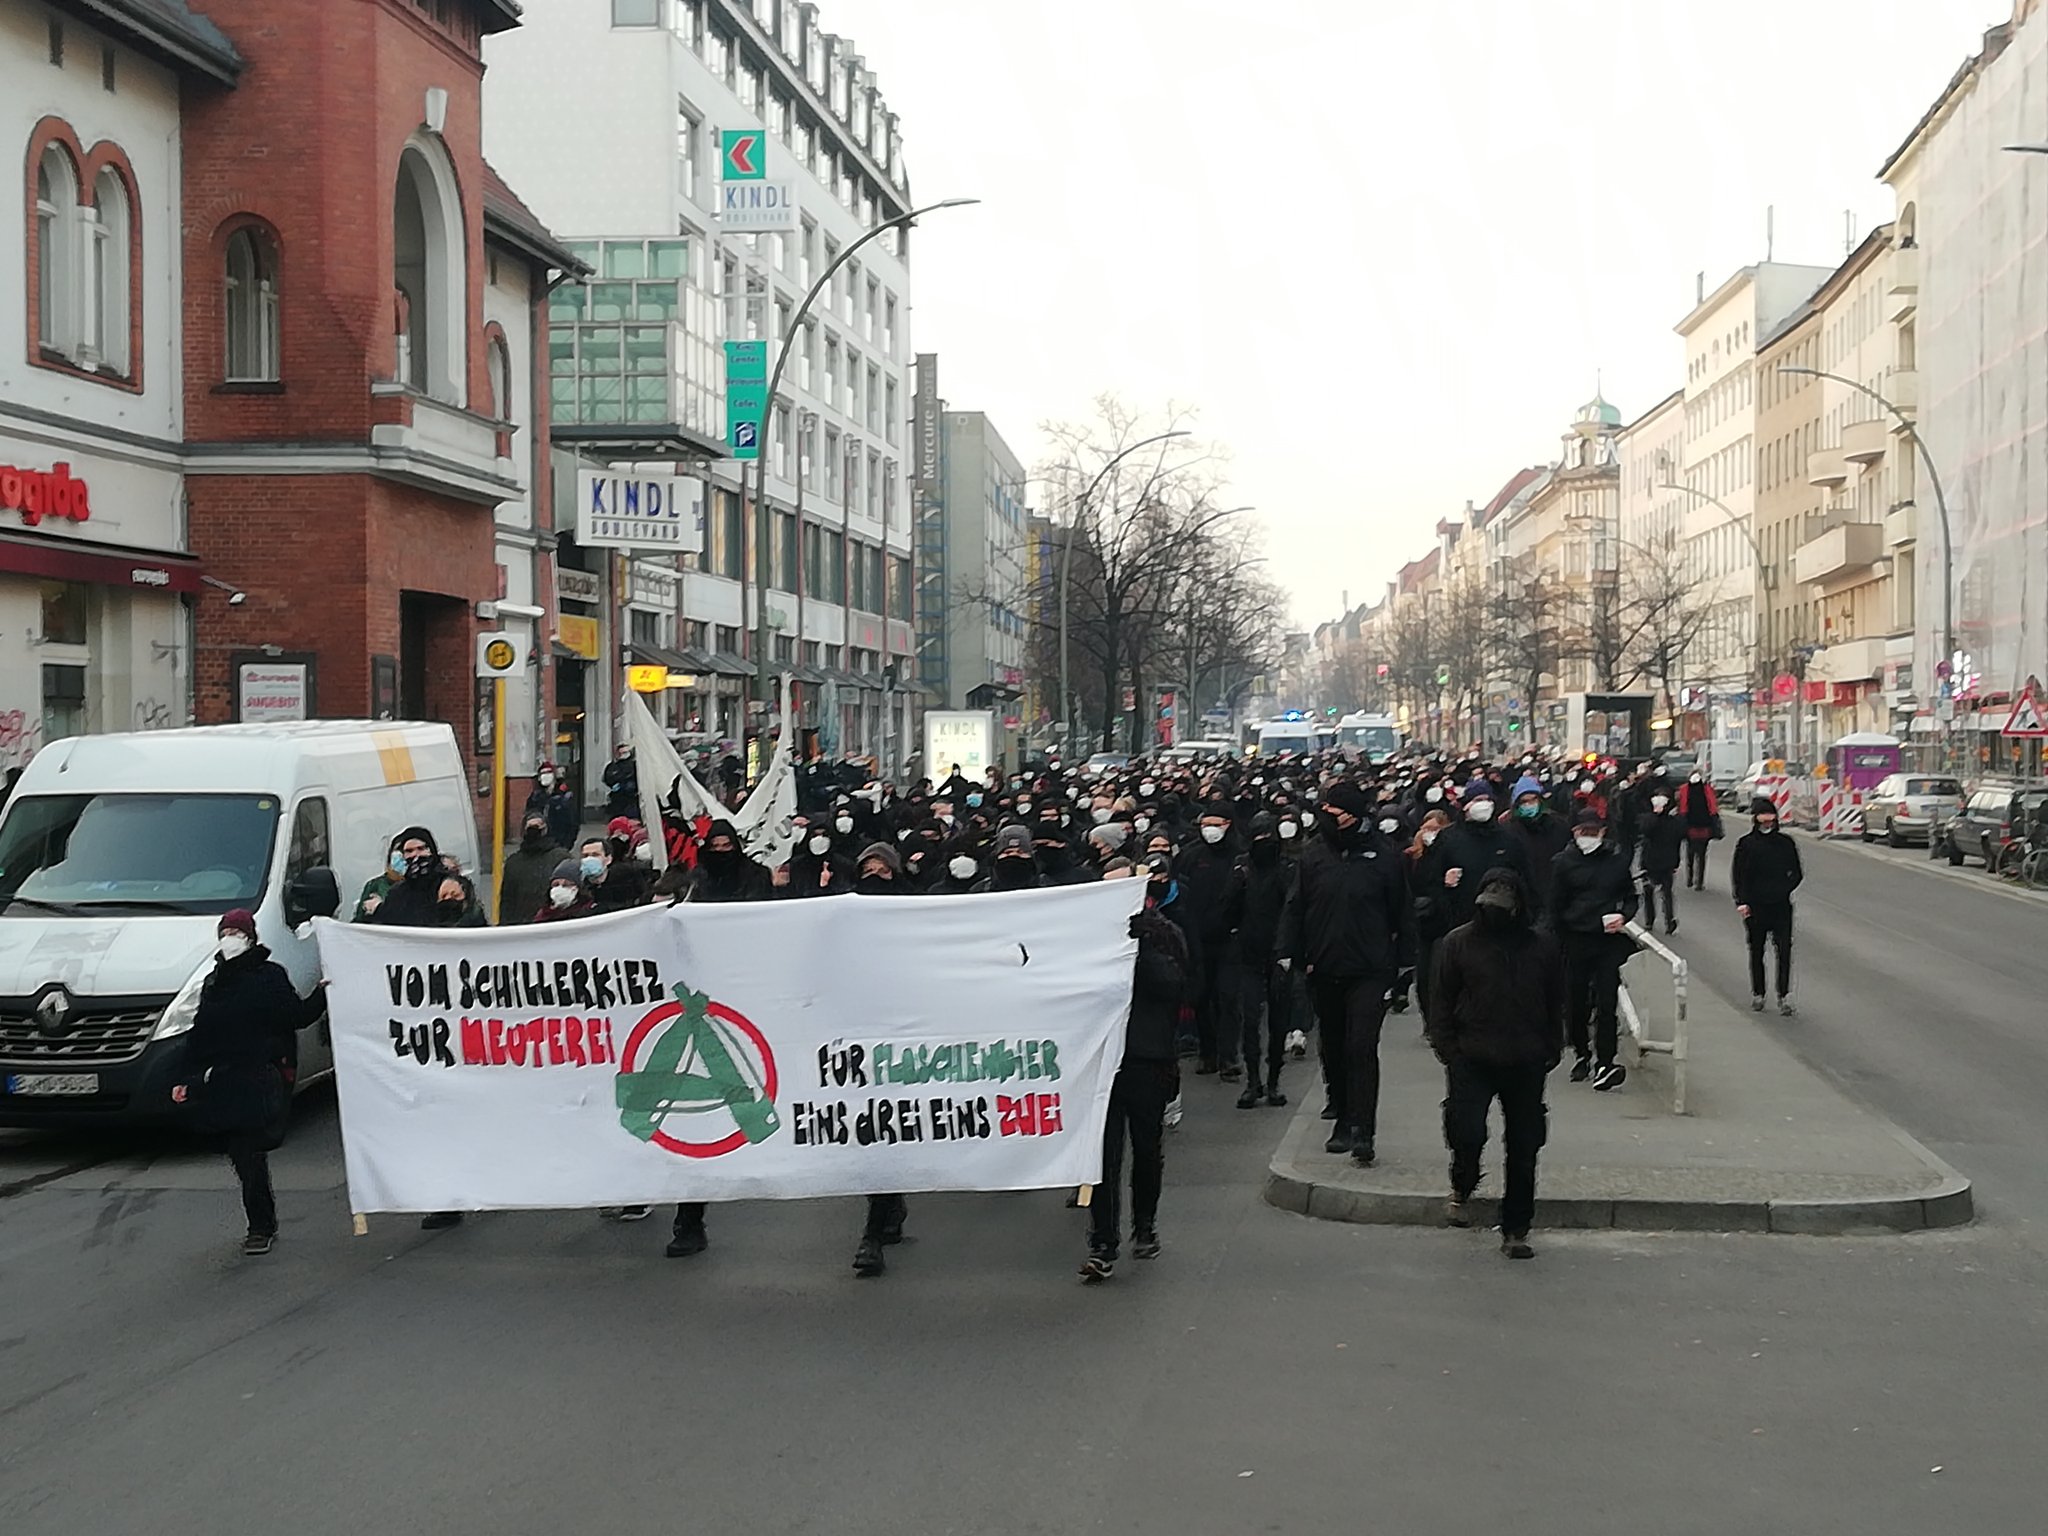 Berlin’de radikal politik grupların toplanma noktalarından biri olan ‘Meuterei’ barının tahliyesine karşı eylemde çatışma çıktı